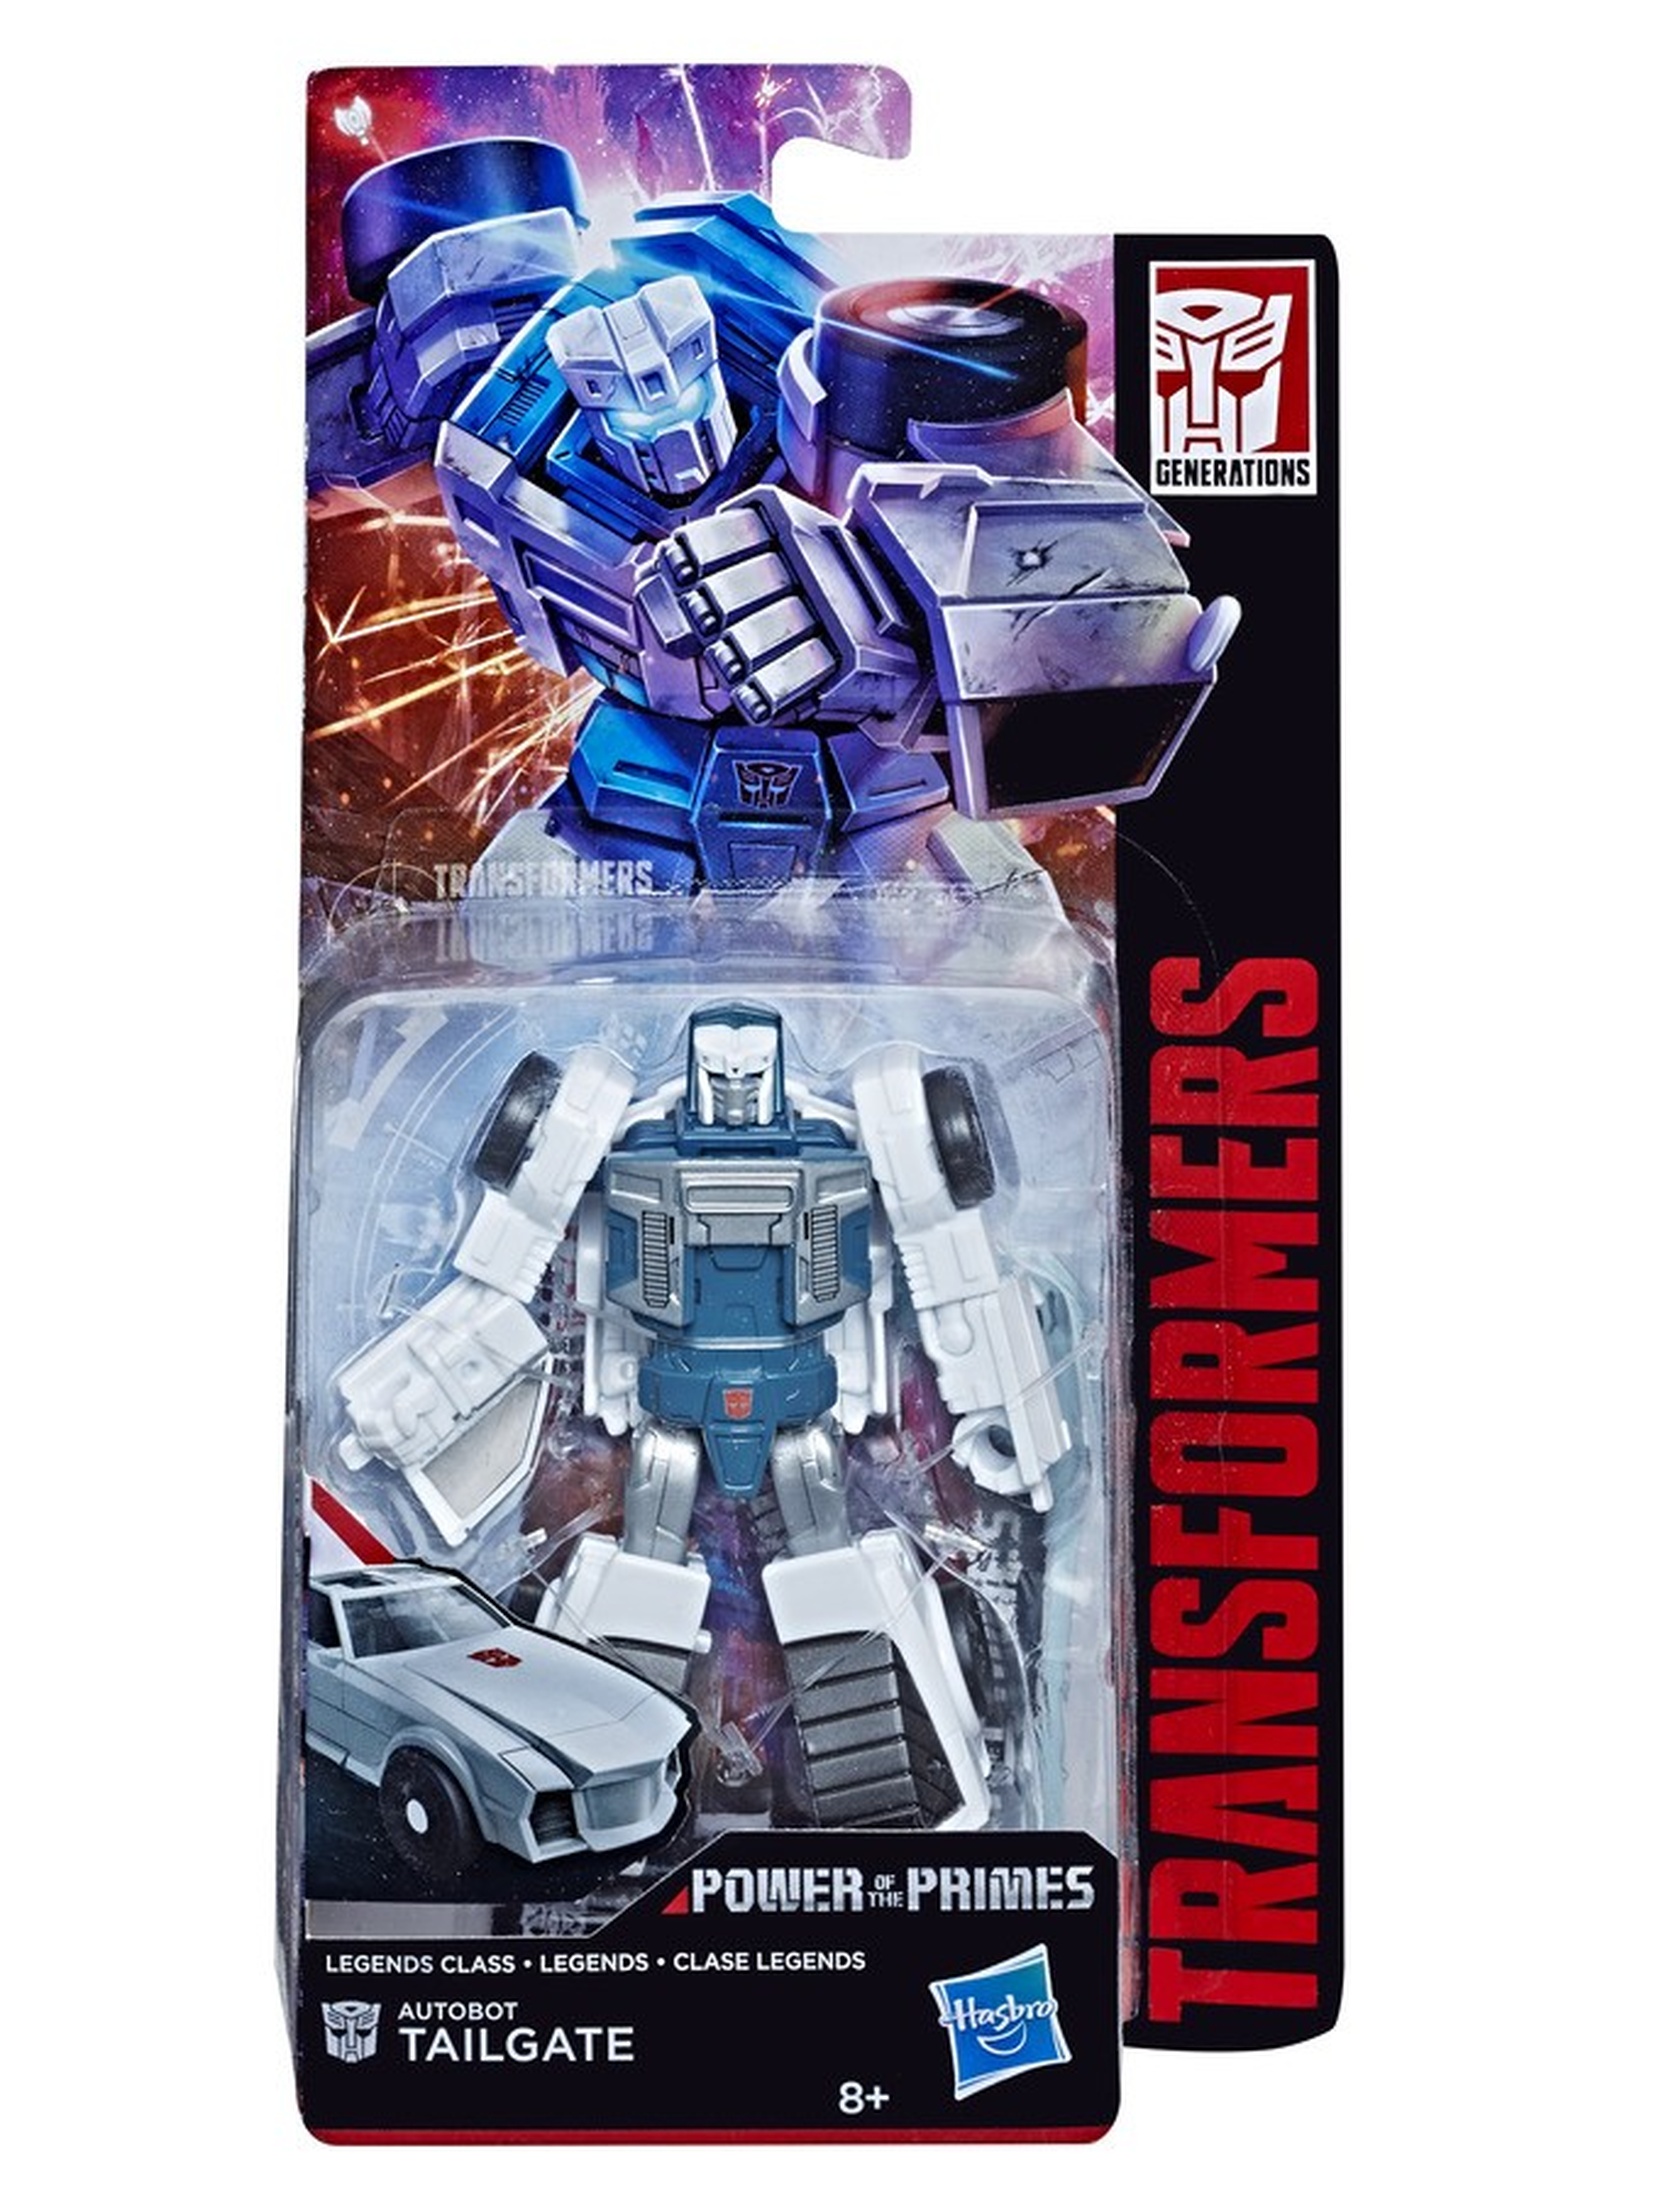 Transformers Primes Legends autobot